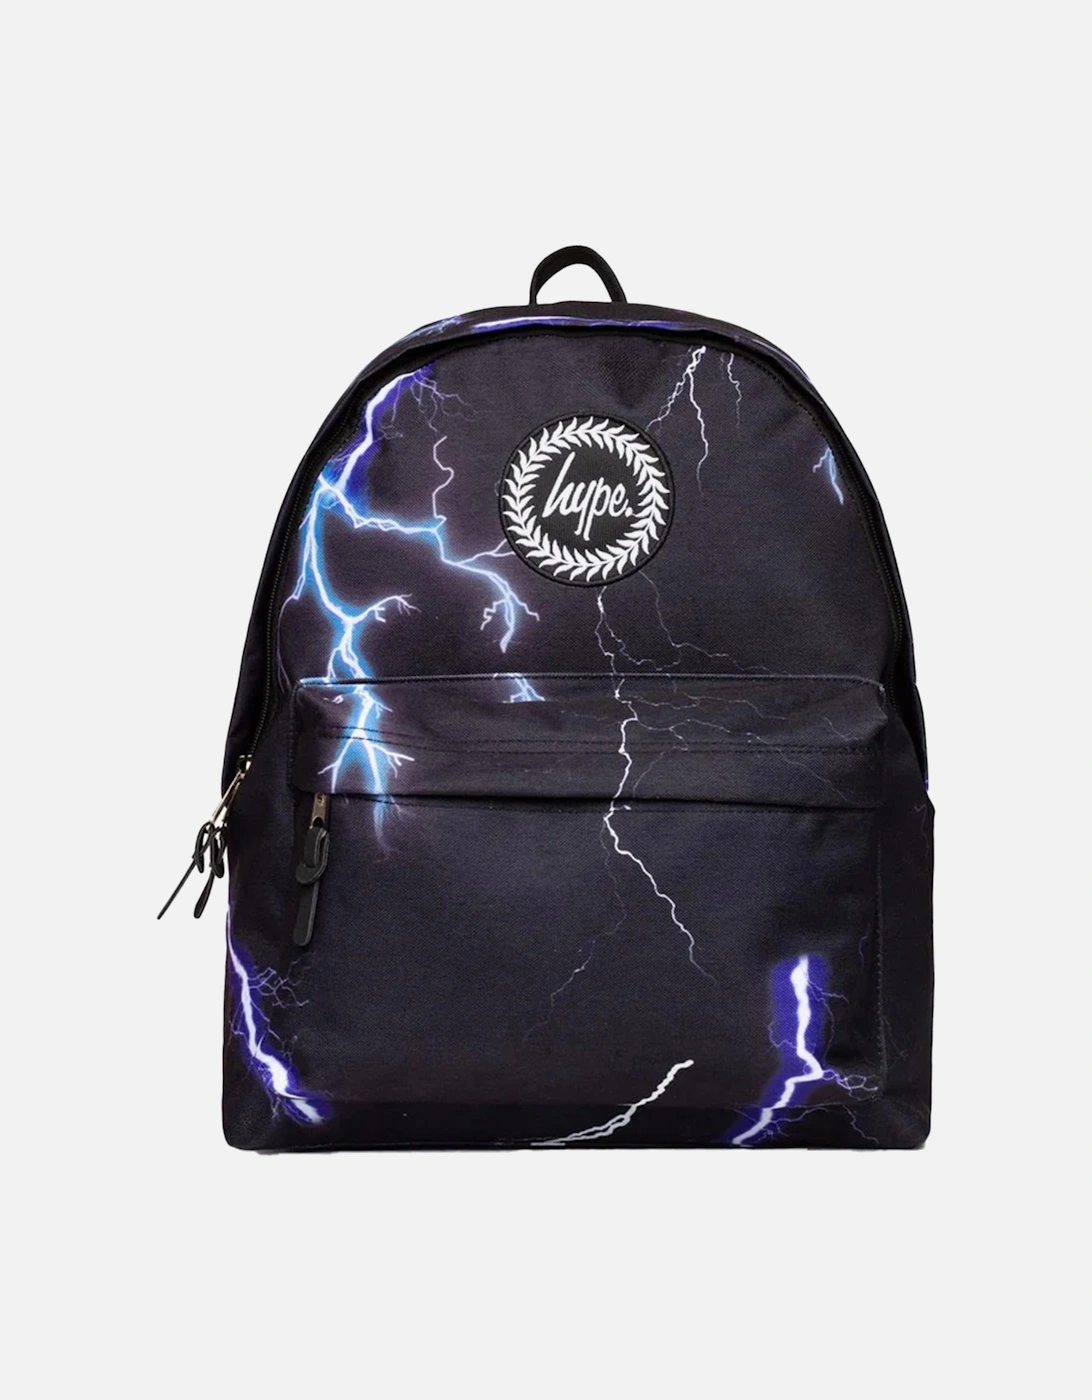 Blue Lightning Backpack (Black), 9 of 8